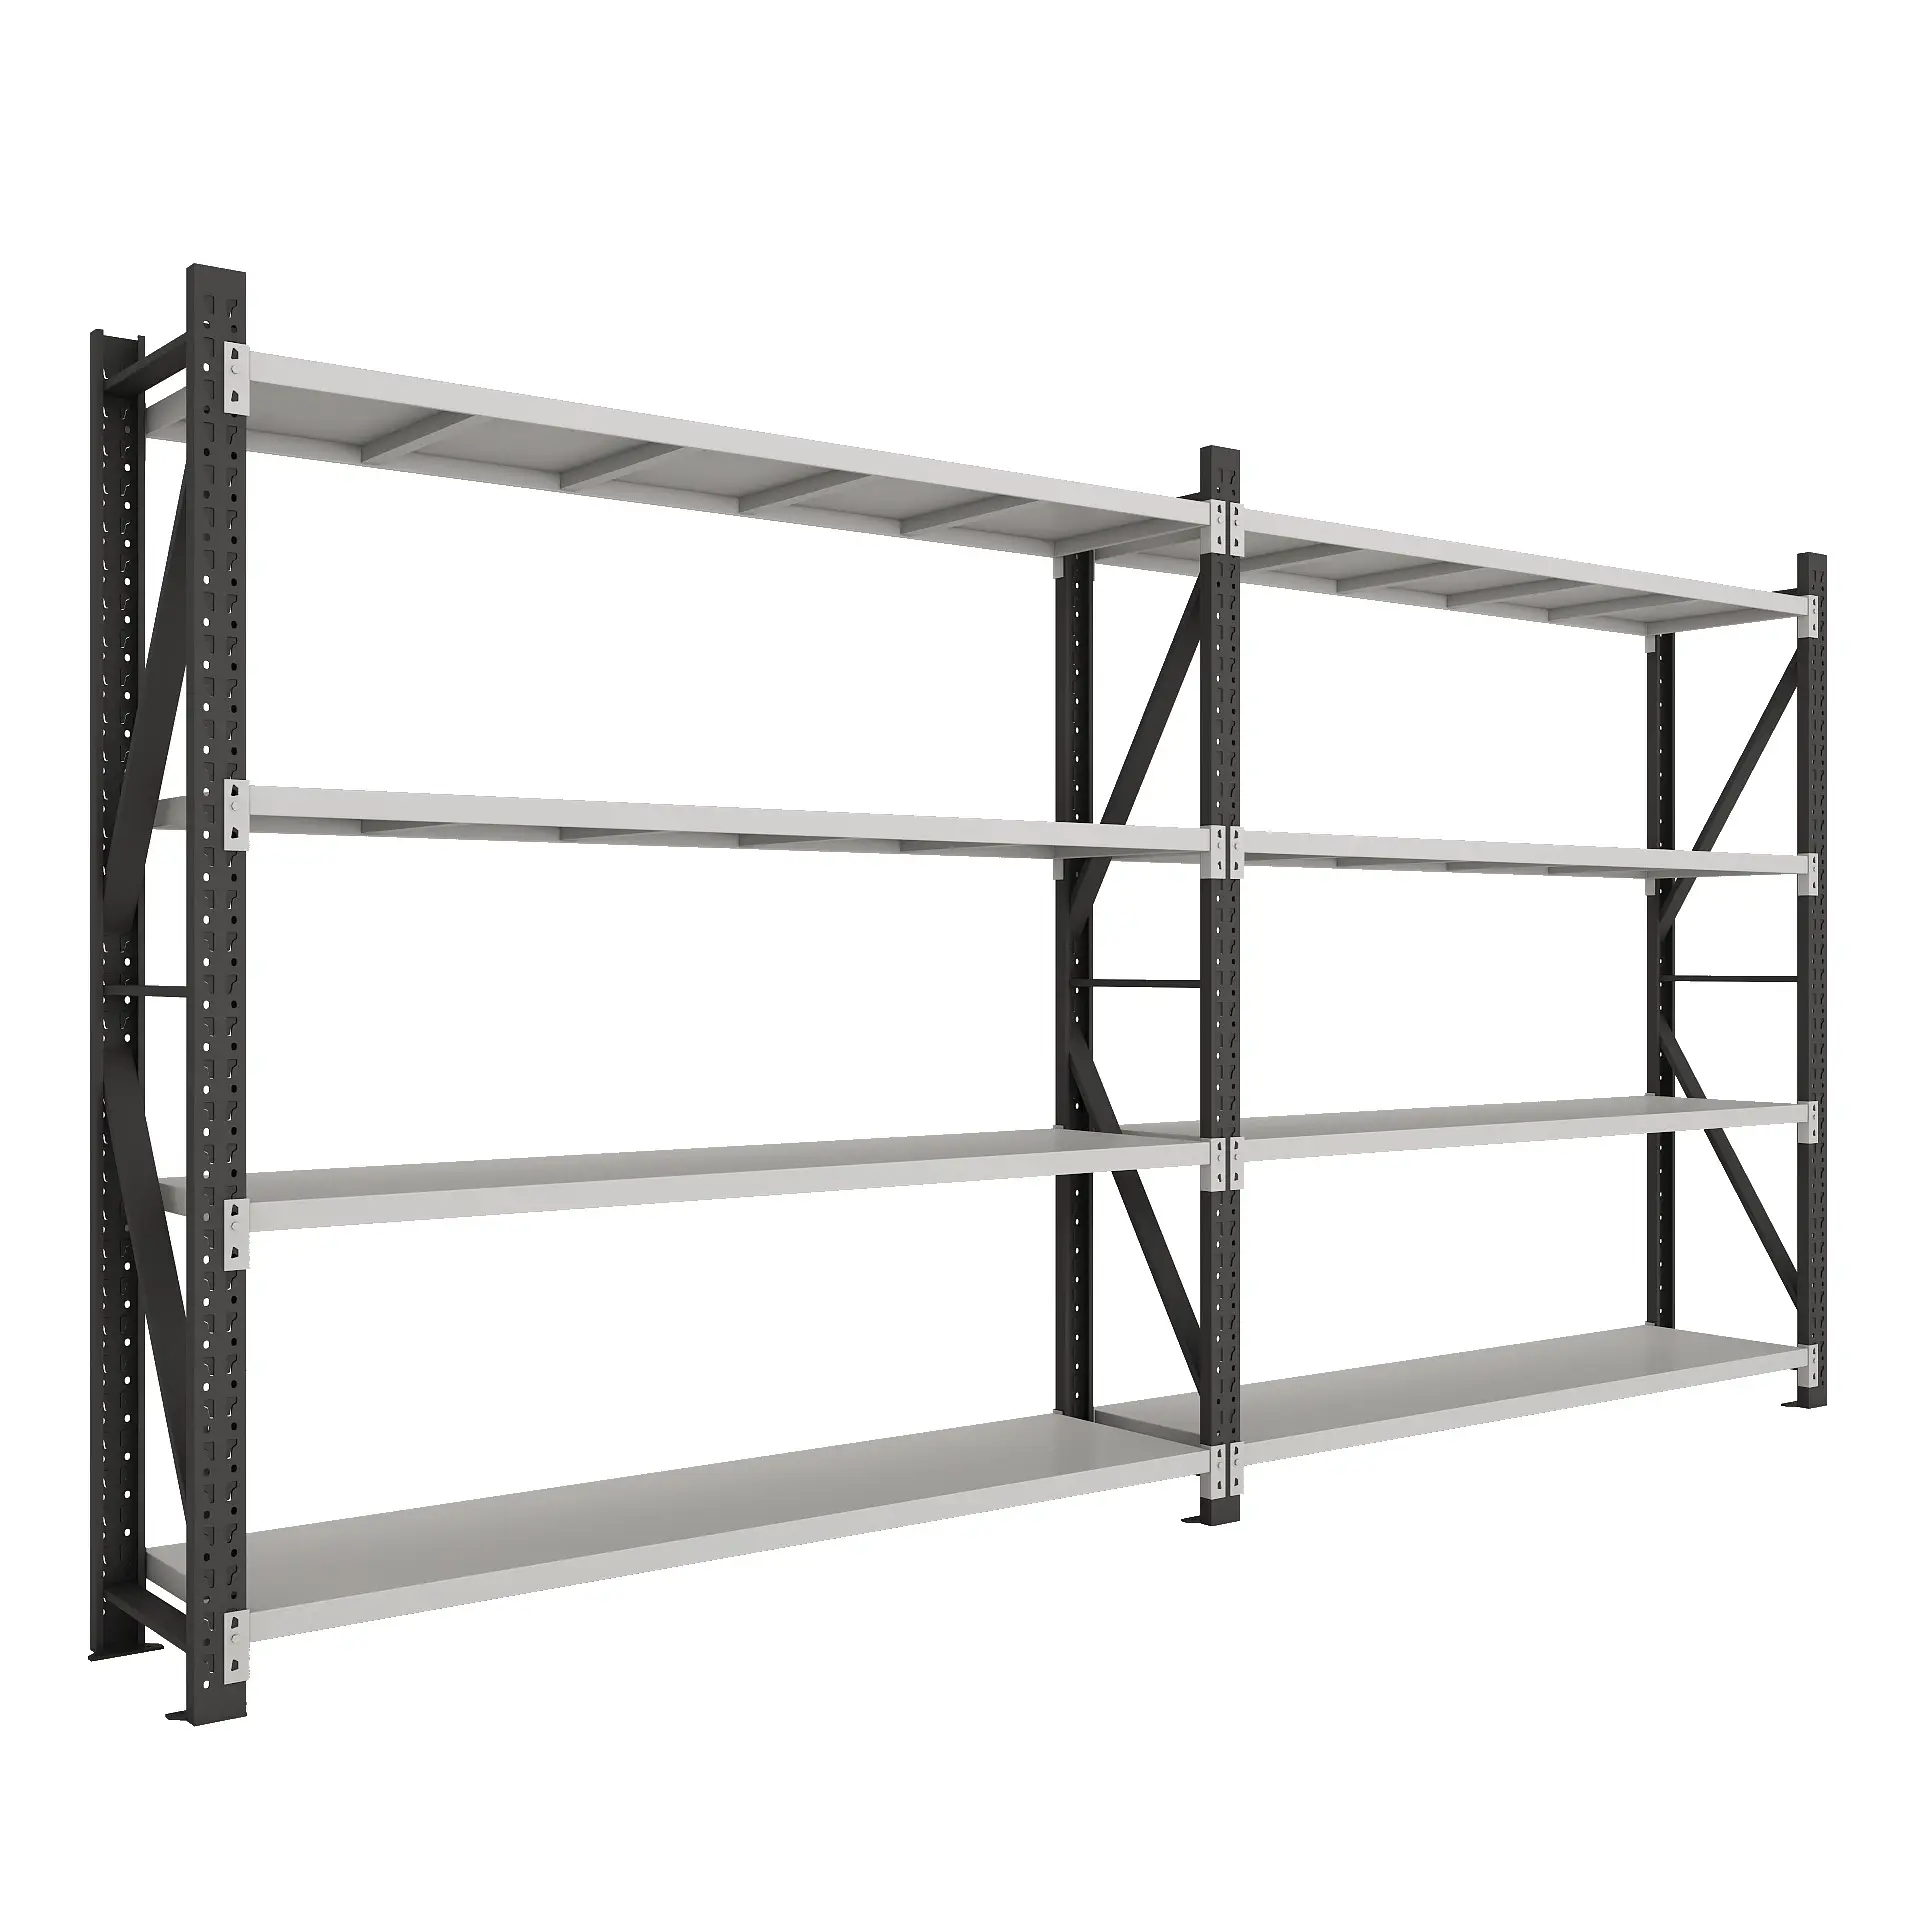 Light-Duty tire racks for dividers warehouse pallet rack